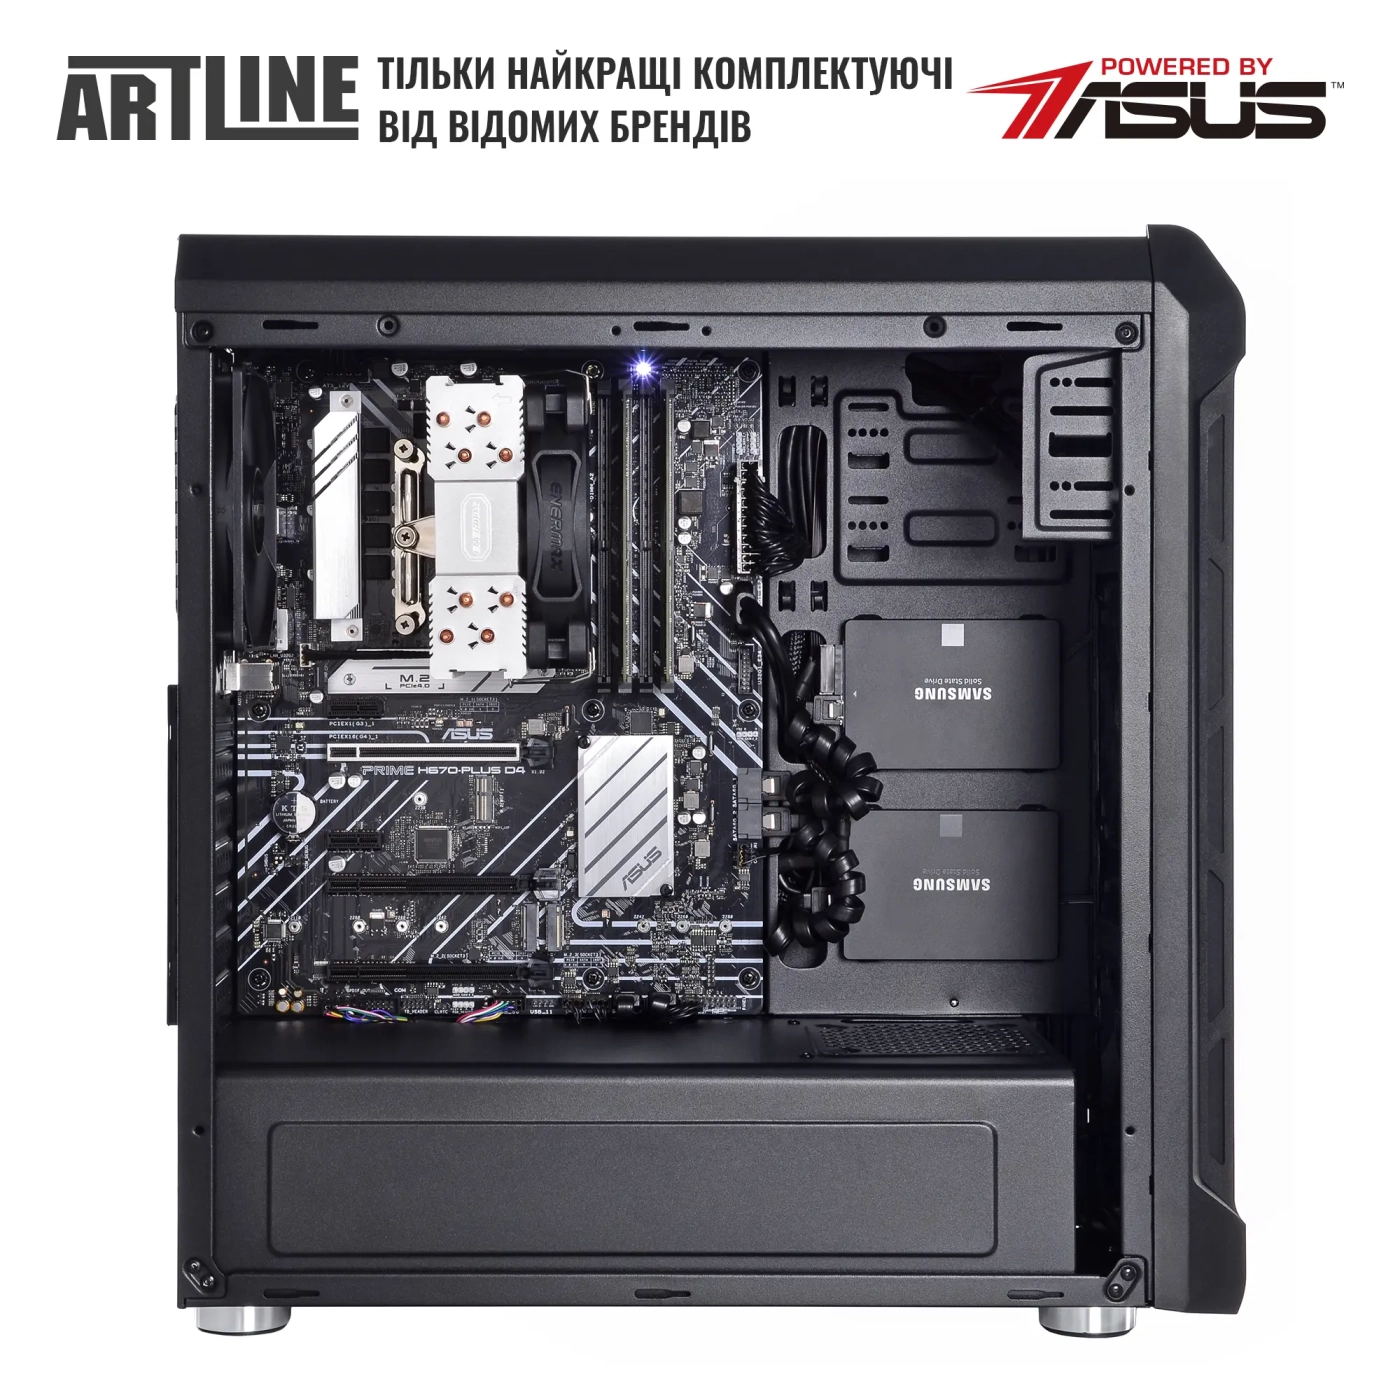 Купить Сервер ARTLINE Business T25 (T25v39) - фото 4